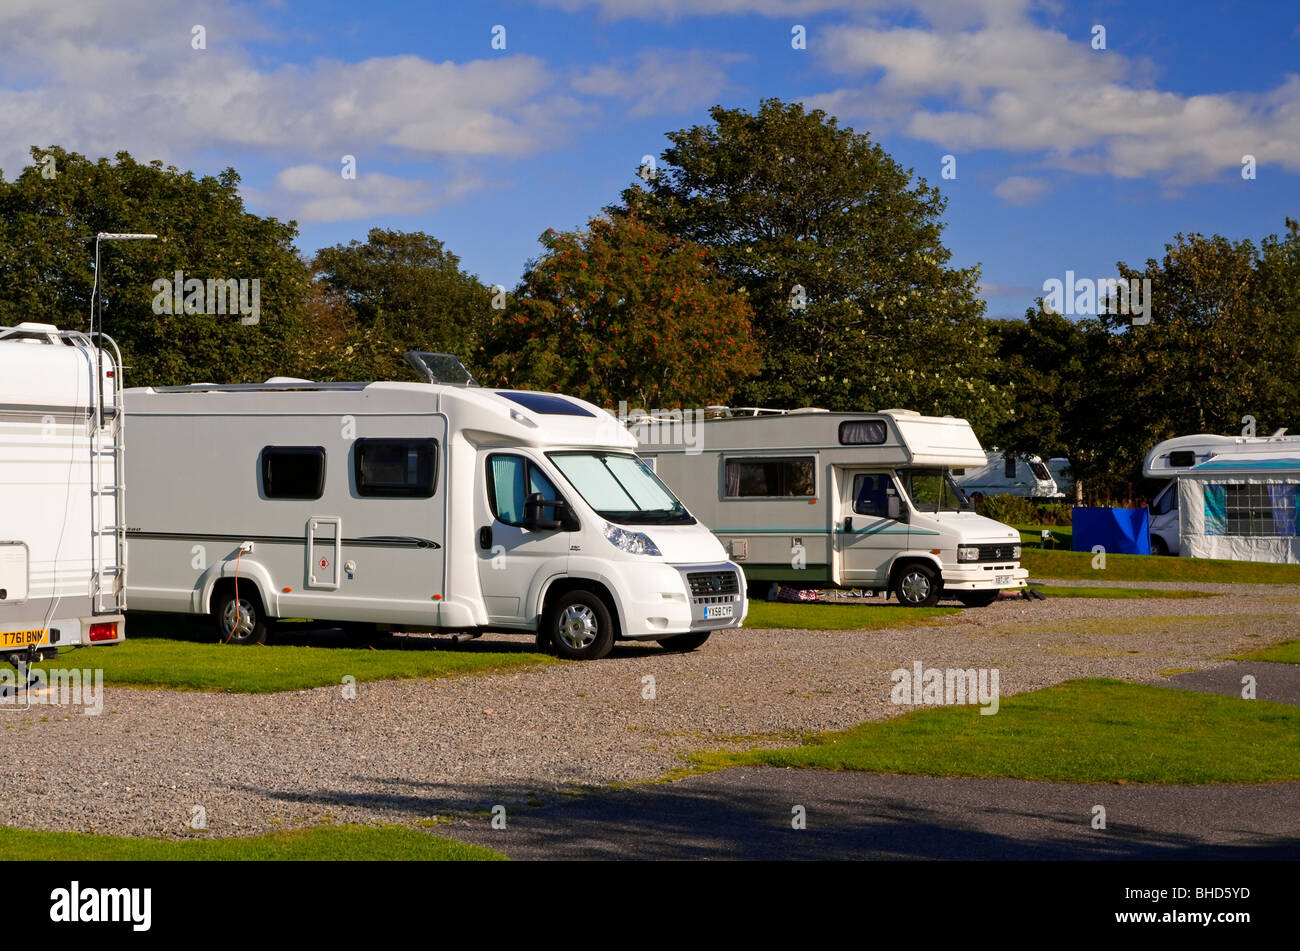 Campingplatz mit modernen Wohnwagen und Wohnmobile in Schottland, Vereinigtes Königreich Stockfoto